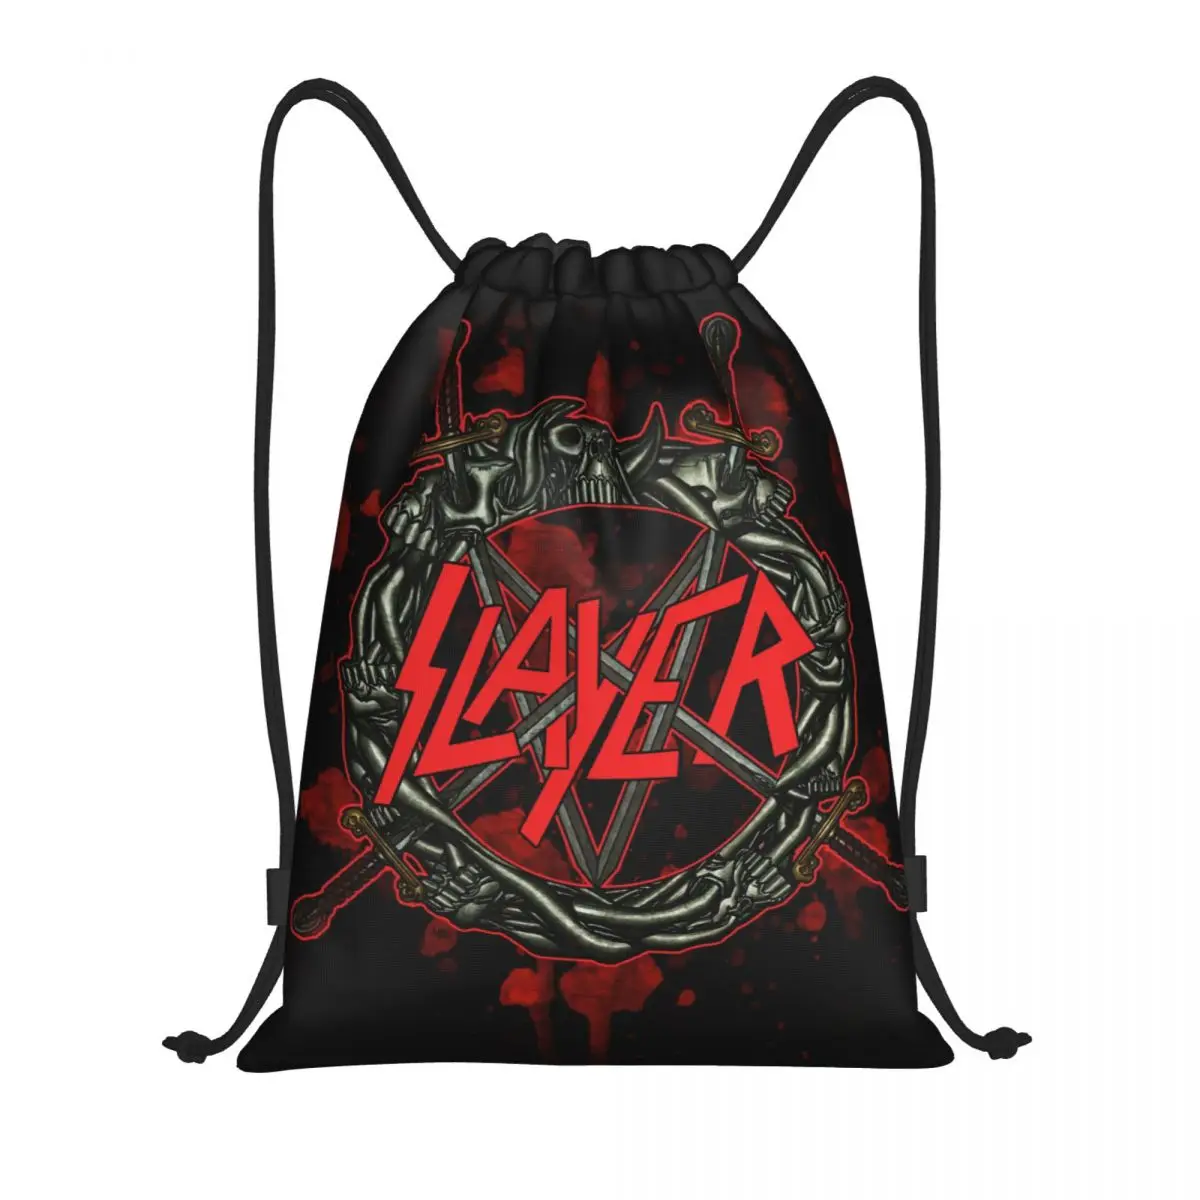 Сумки с логотипом Heavy Metal Rock Slayers на шнурке Для женщин и мужчин, портативные спортивные рюкзаки для спортзала, трэш-группы, рюкзаки для покупок